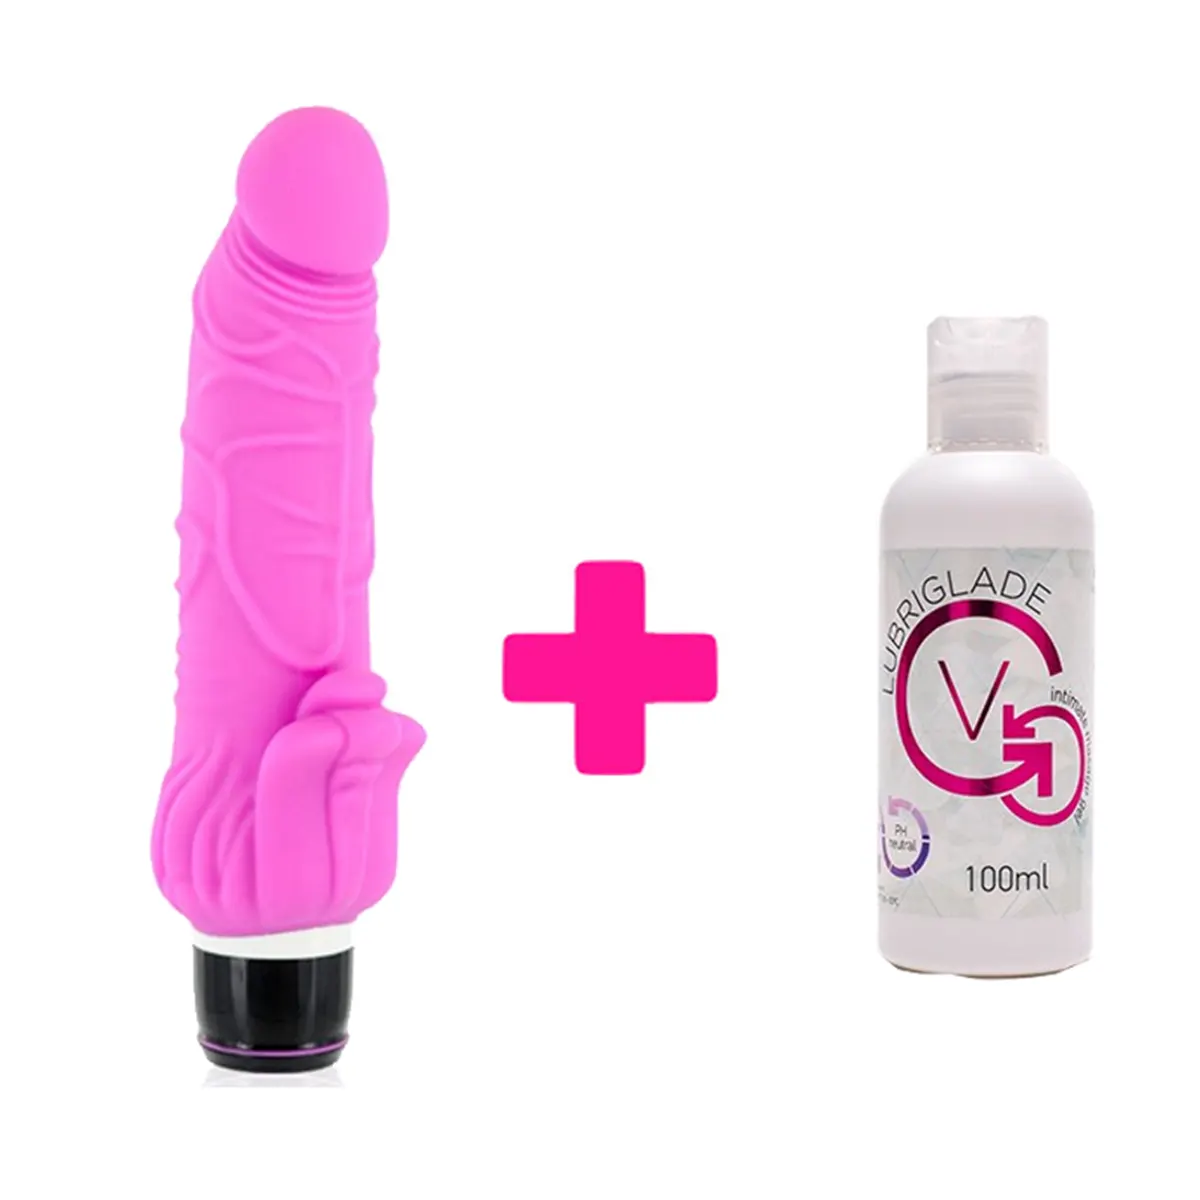 Rozi silikonski vibrator sa dodatkom za klitoris i Lubrikant